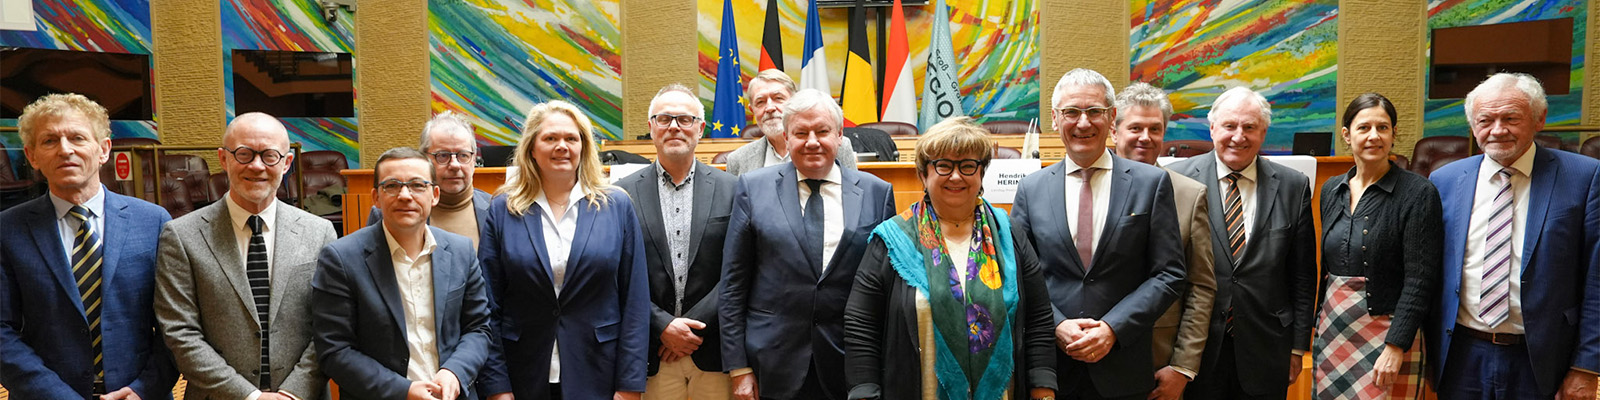 Mitglieder des Interregionalen Parlamentarierrates bei der Präsidentschaftsübergabe in Metz